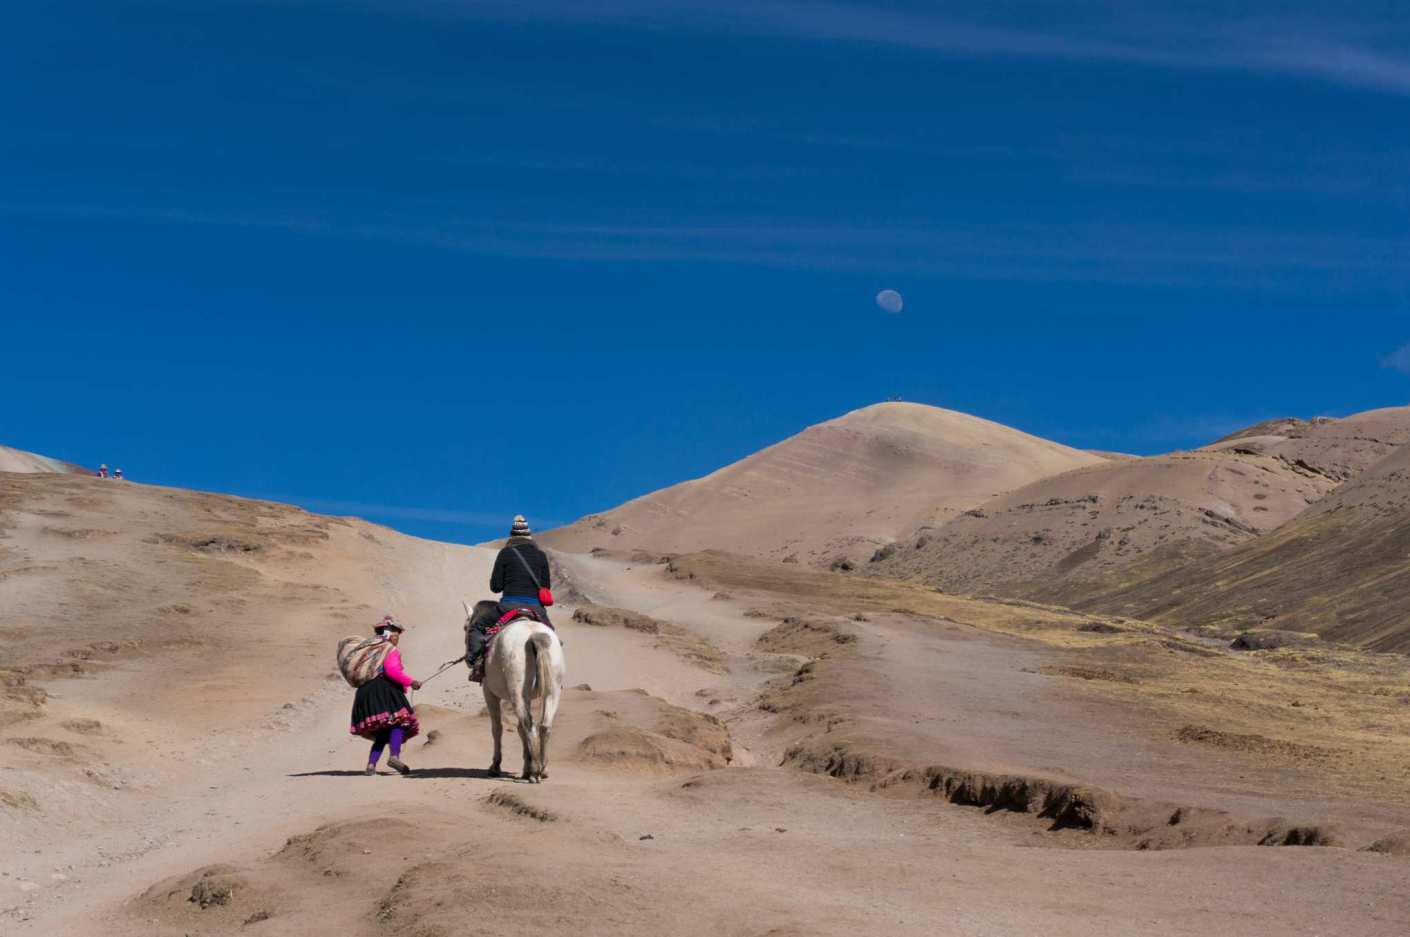 Bardzo duży wyjazd do Peru - pierwszy raz w Ameryce Południowej